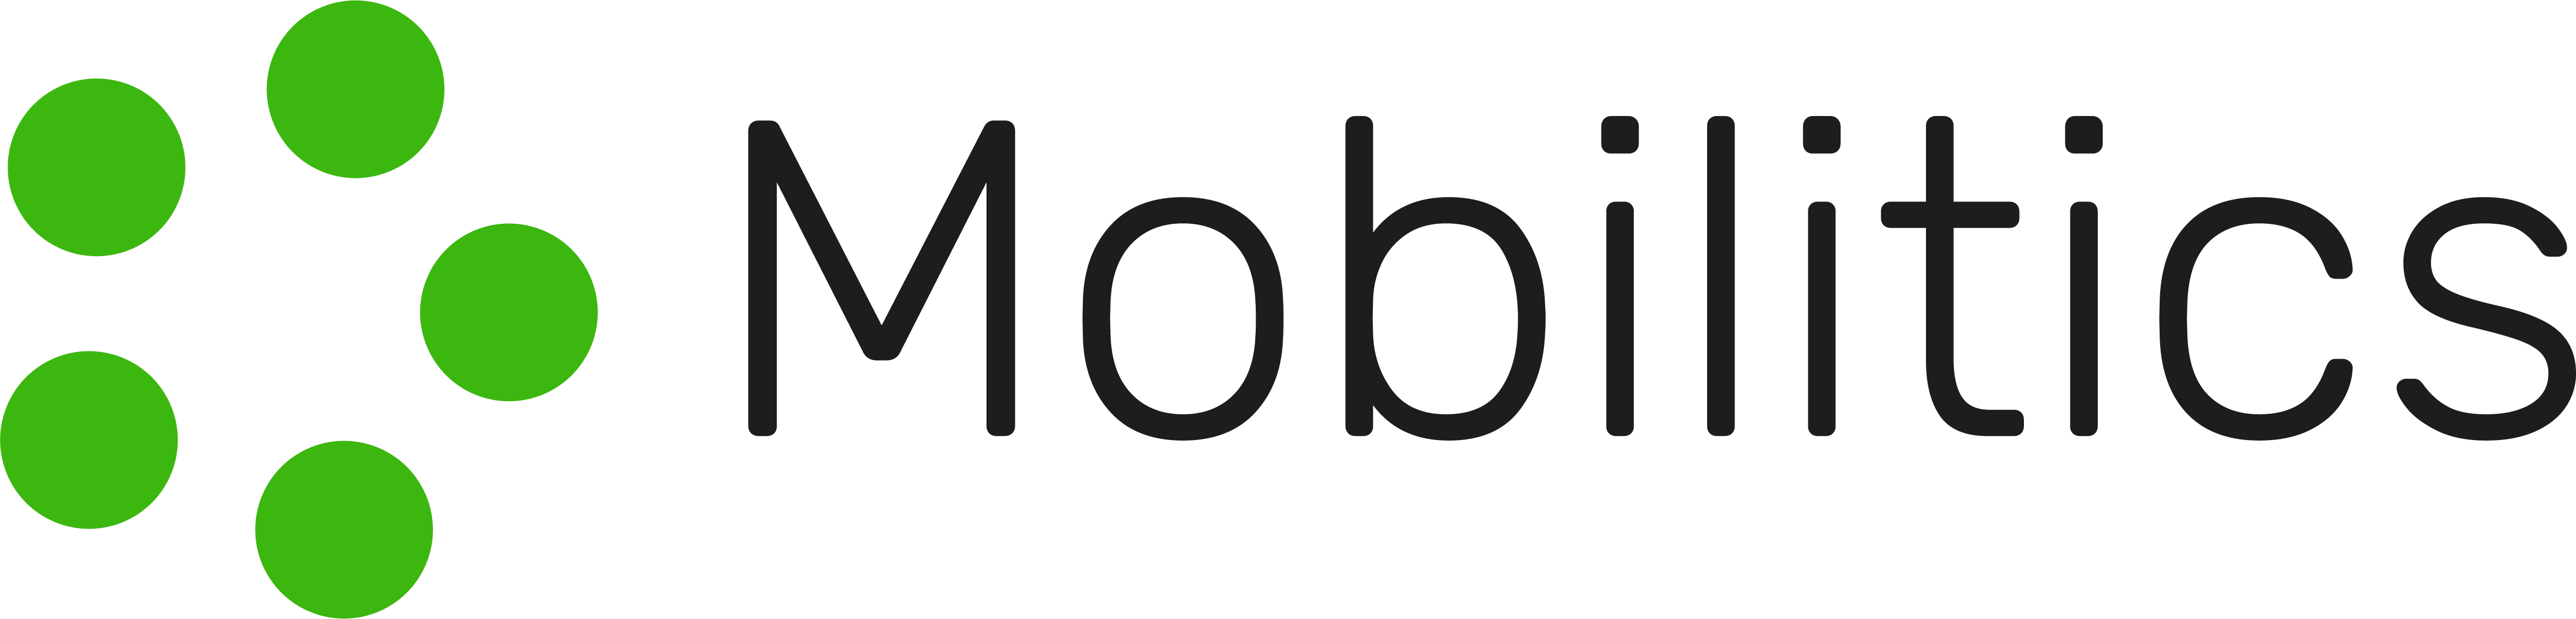 Mobilitics logo